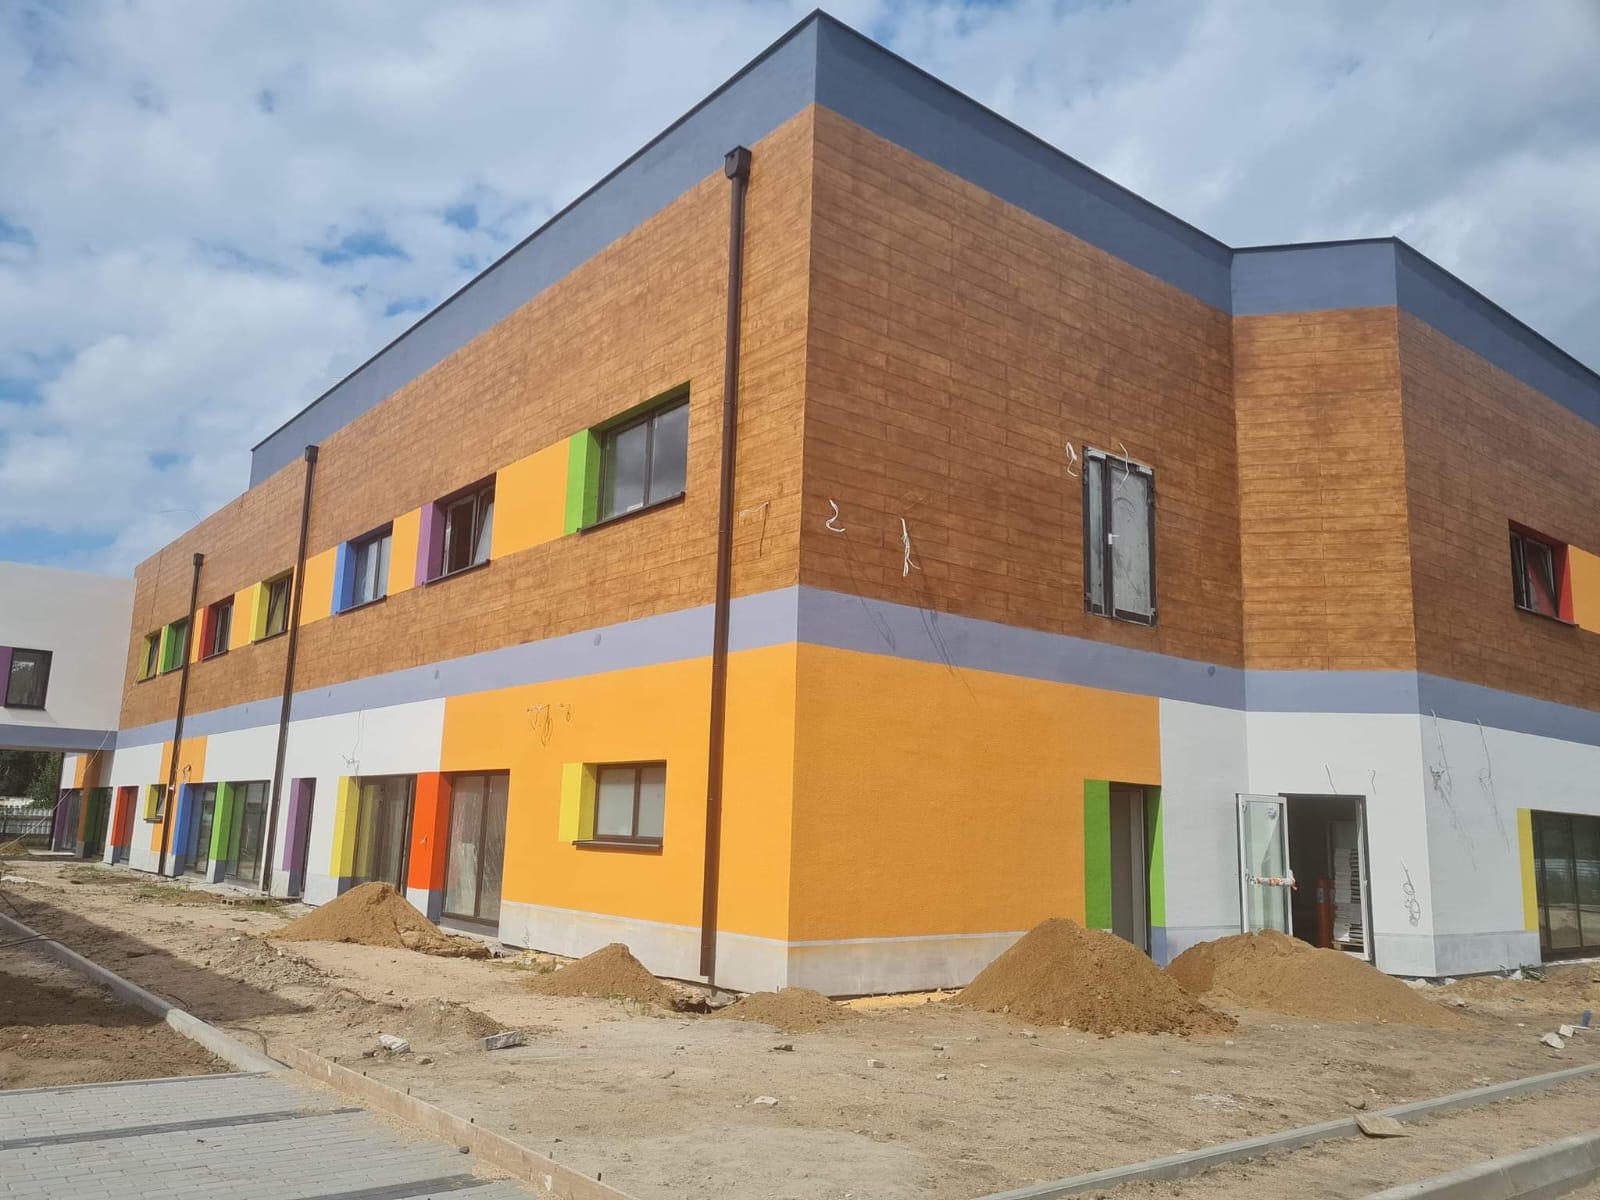 Budowa Szkoły Podstawowej w Czarnej Dąbrówce już w ostatniej fazie realizacji. Dofinansowanie pochodzi z Rządowego Programu Inwestycji Strategicznych w kwocie 8,5 mln zł.